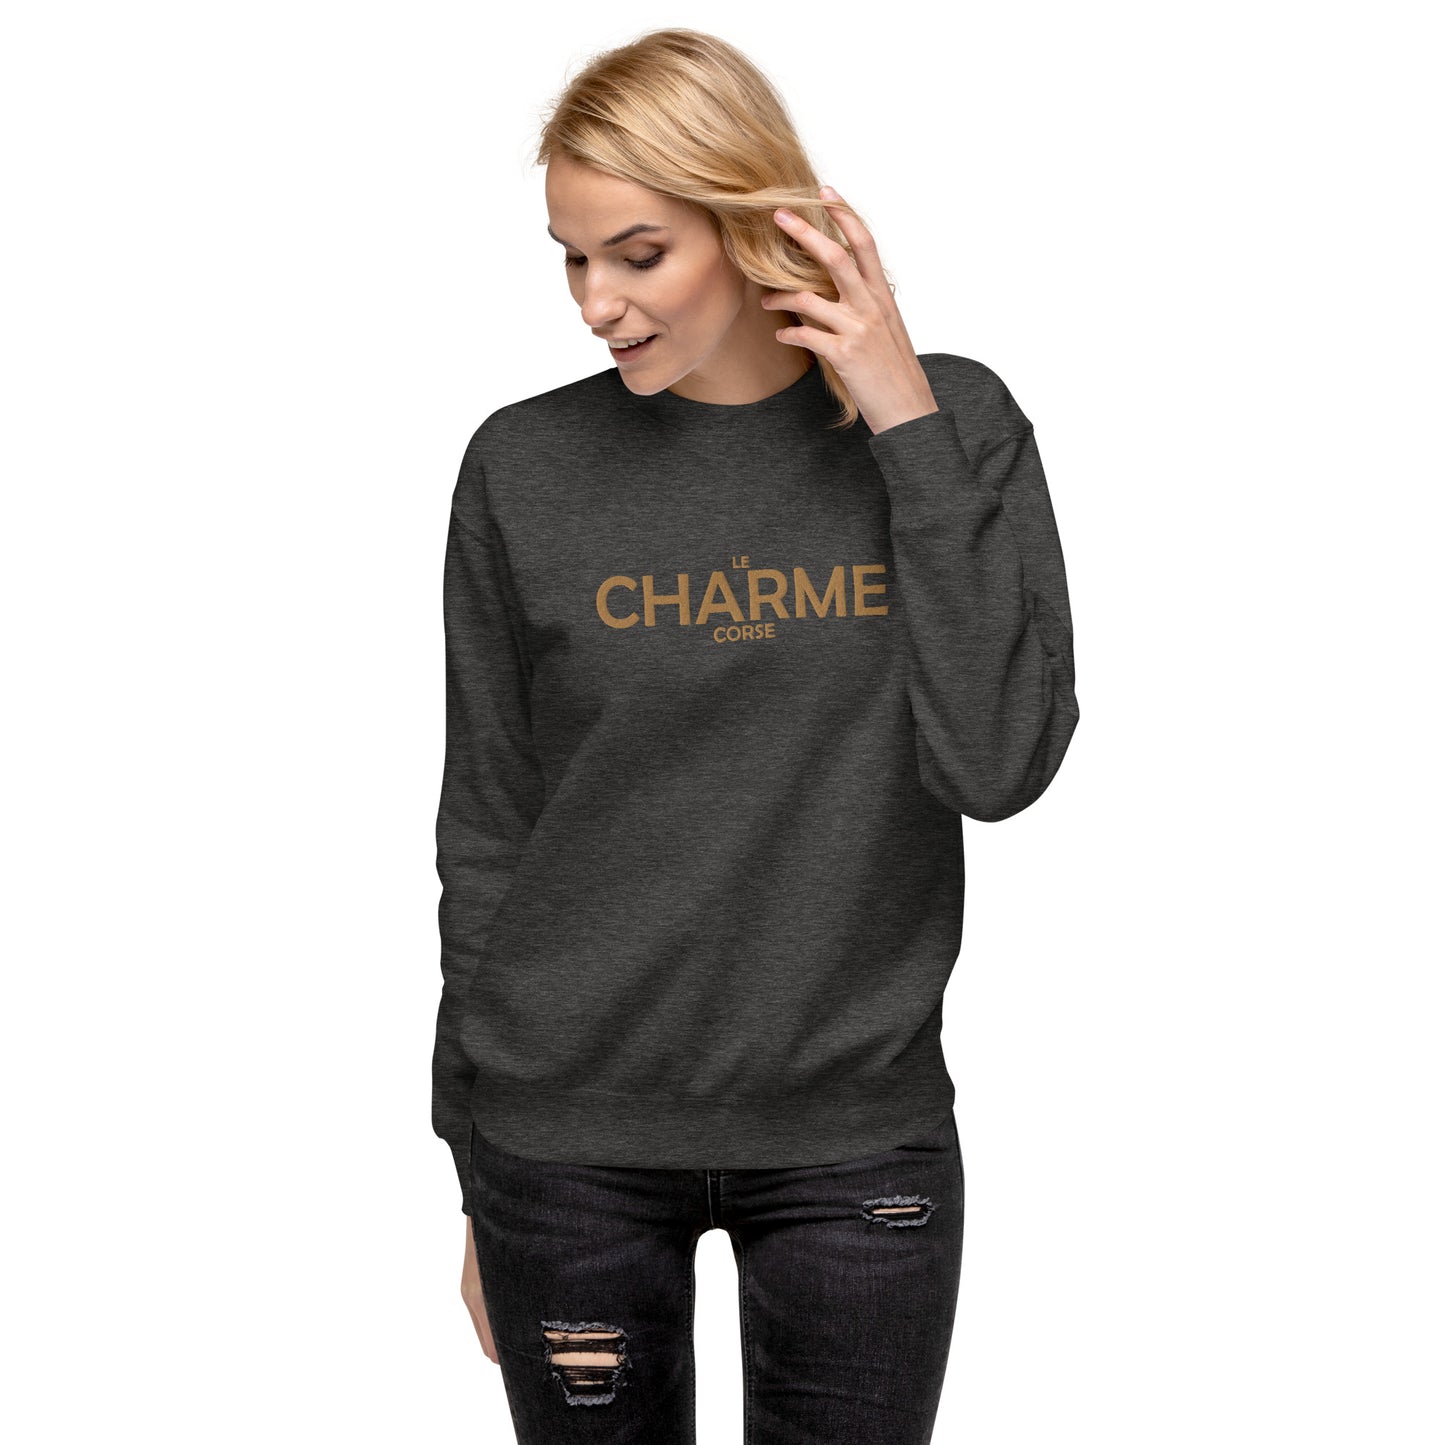 Sweatshirt premium Brodé Le Charme Corse